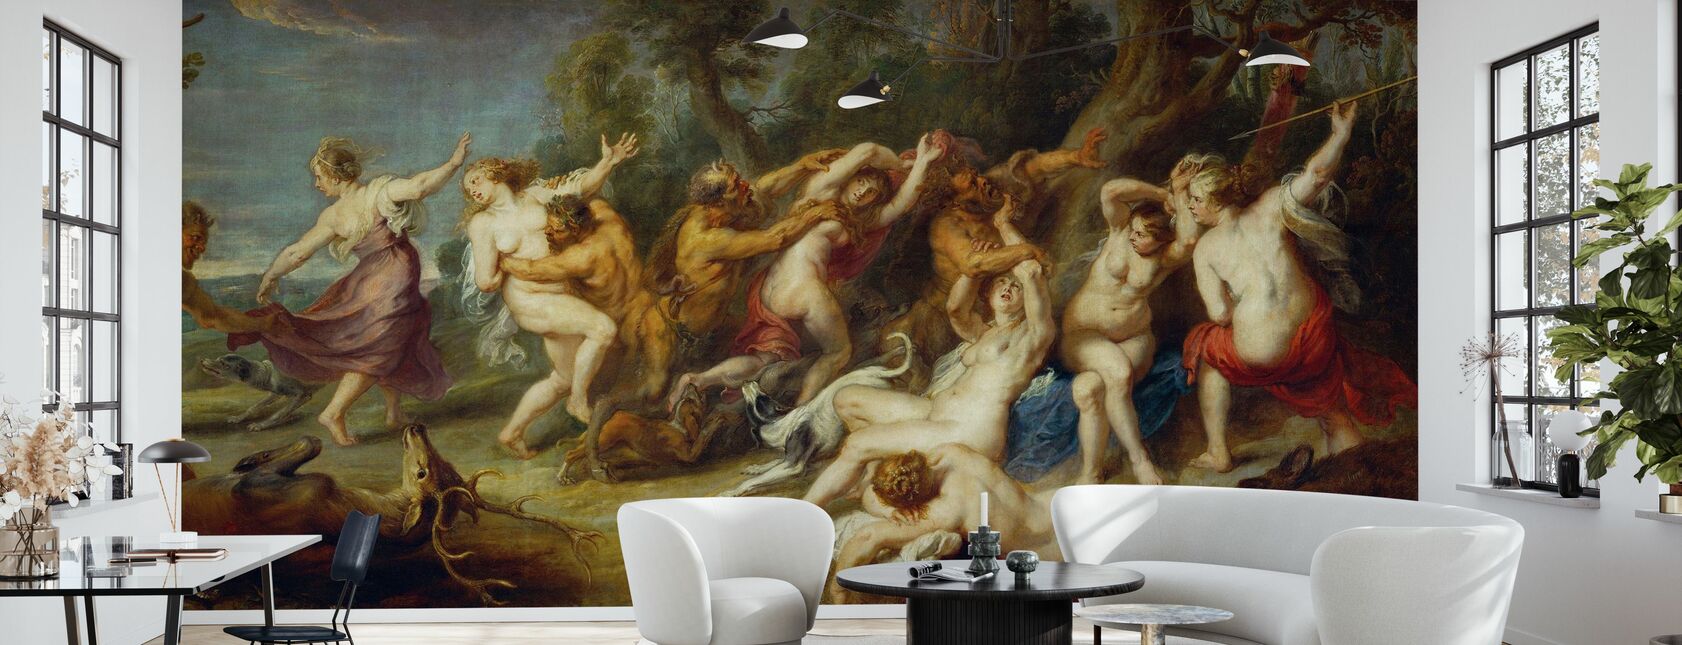 Diana og hennes nymfer, Peter Paul Rubens - Tapet - Stue